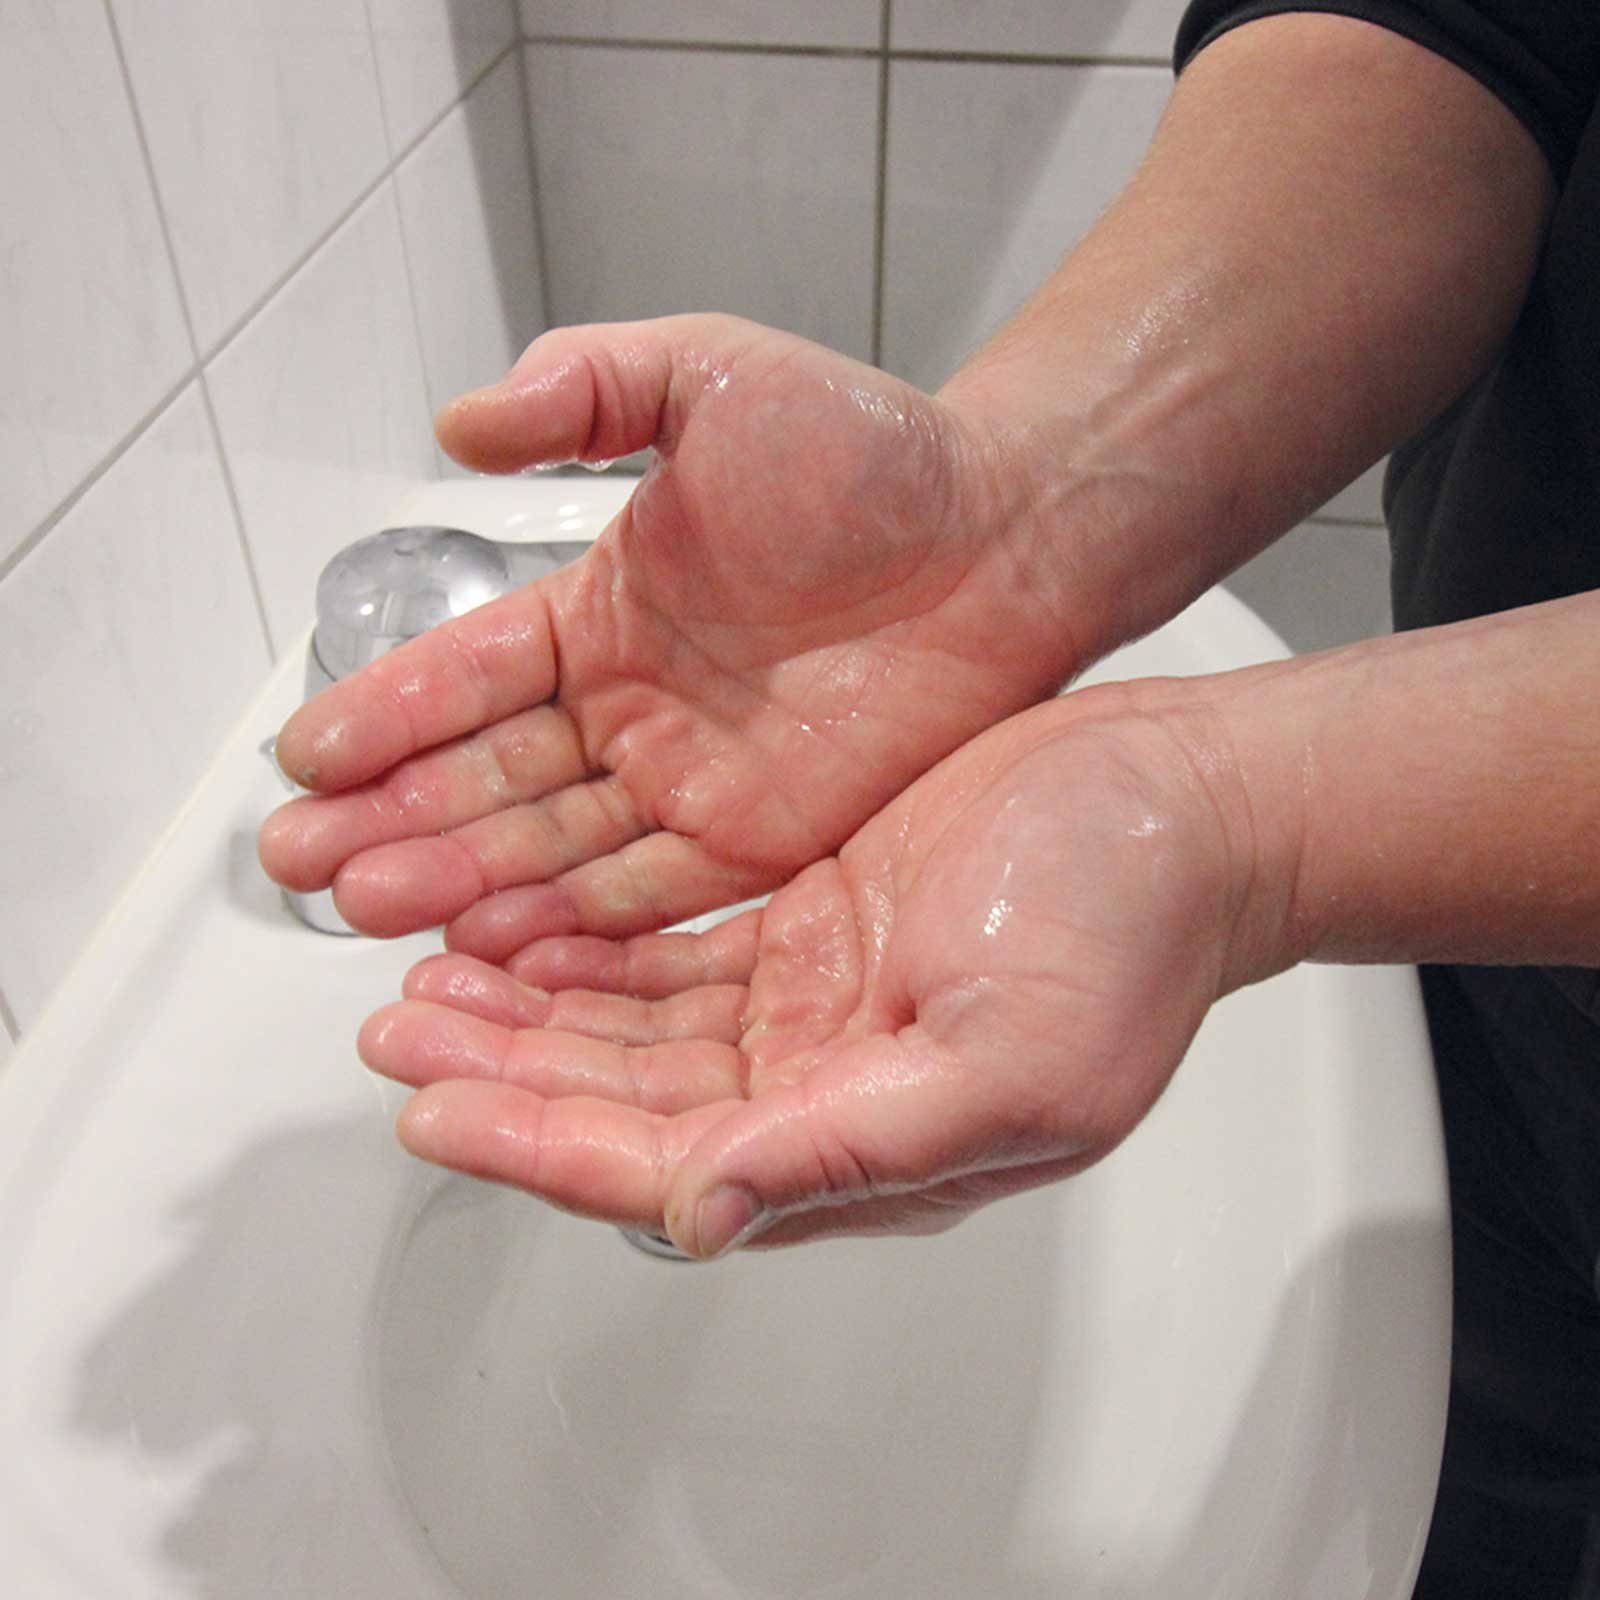 TECHNOLIT® Handcreme TECHNOLIT Handreiniger Technoclean Seife 30L Waschpaste Handwaschpaste